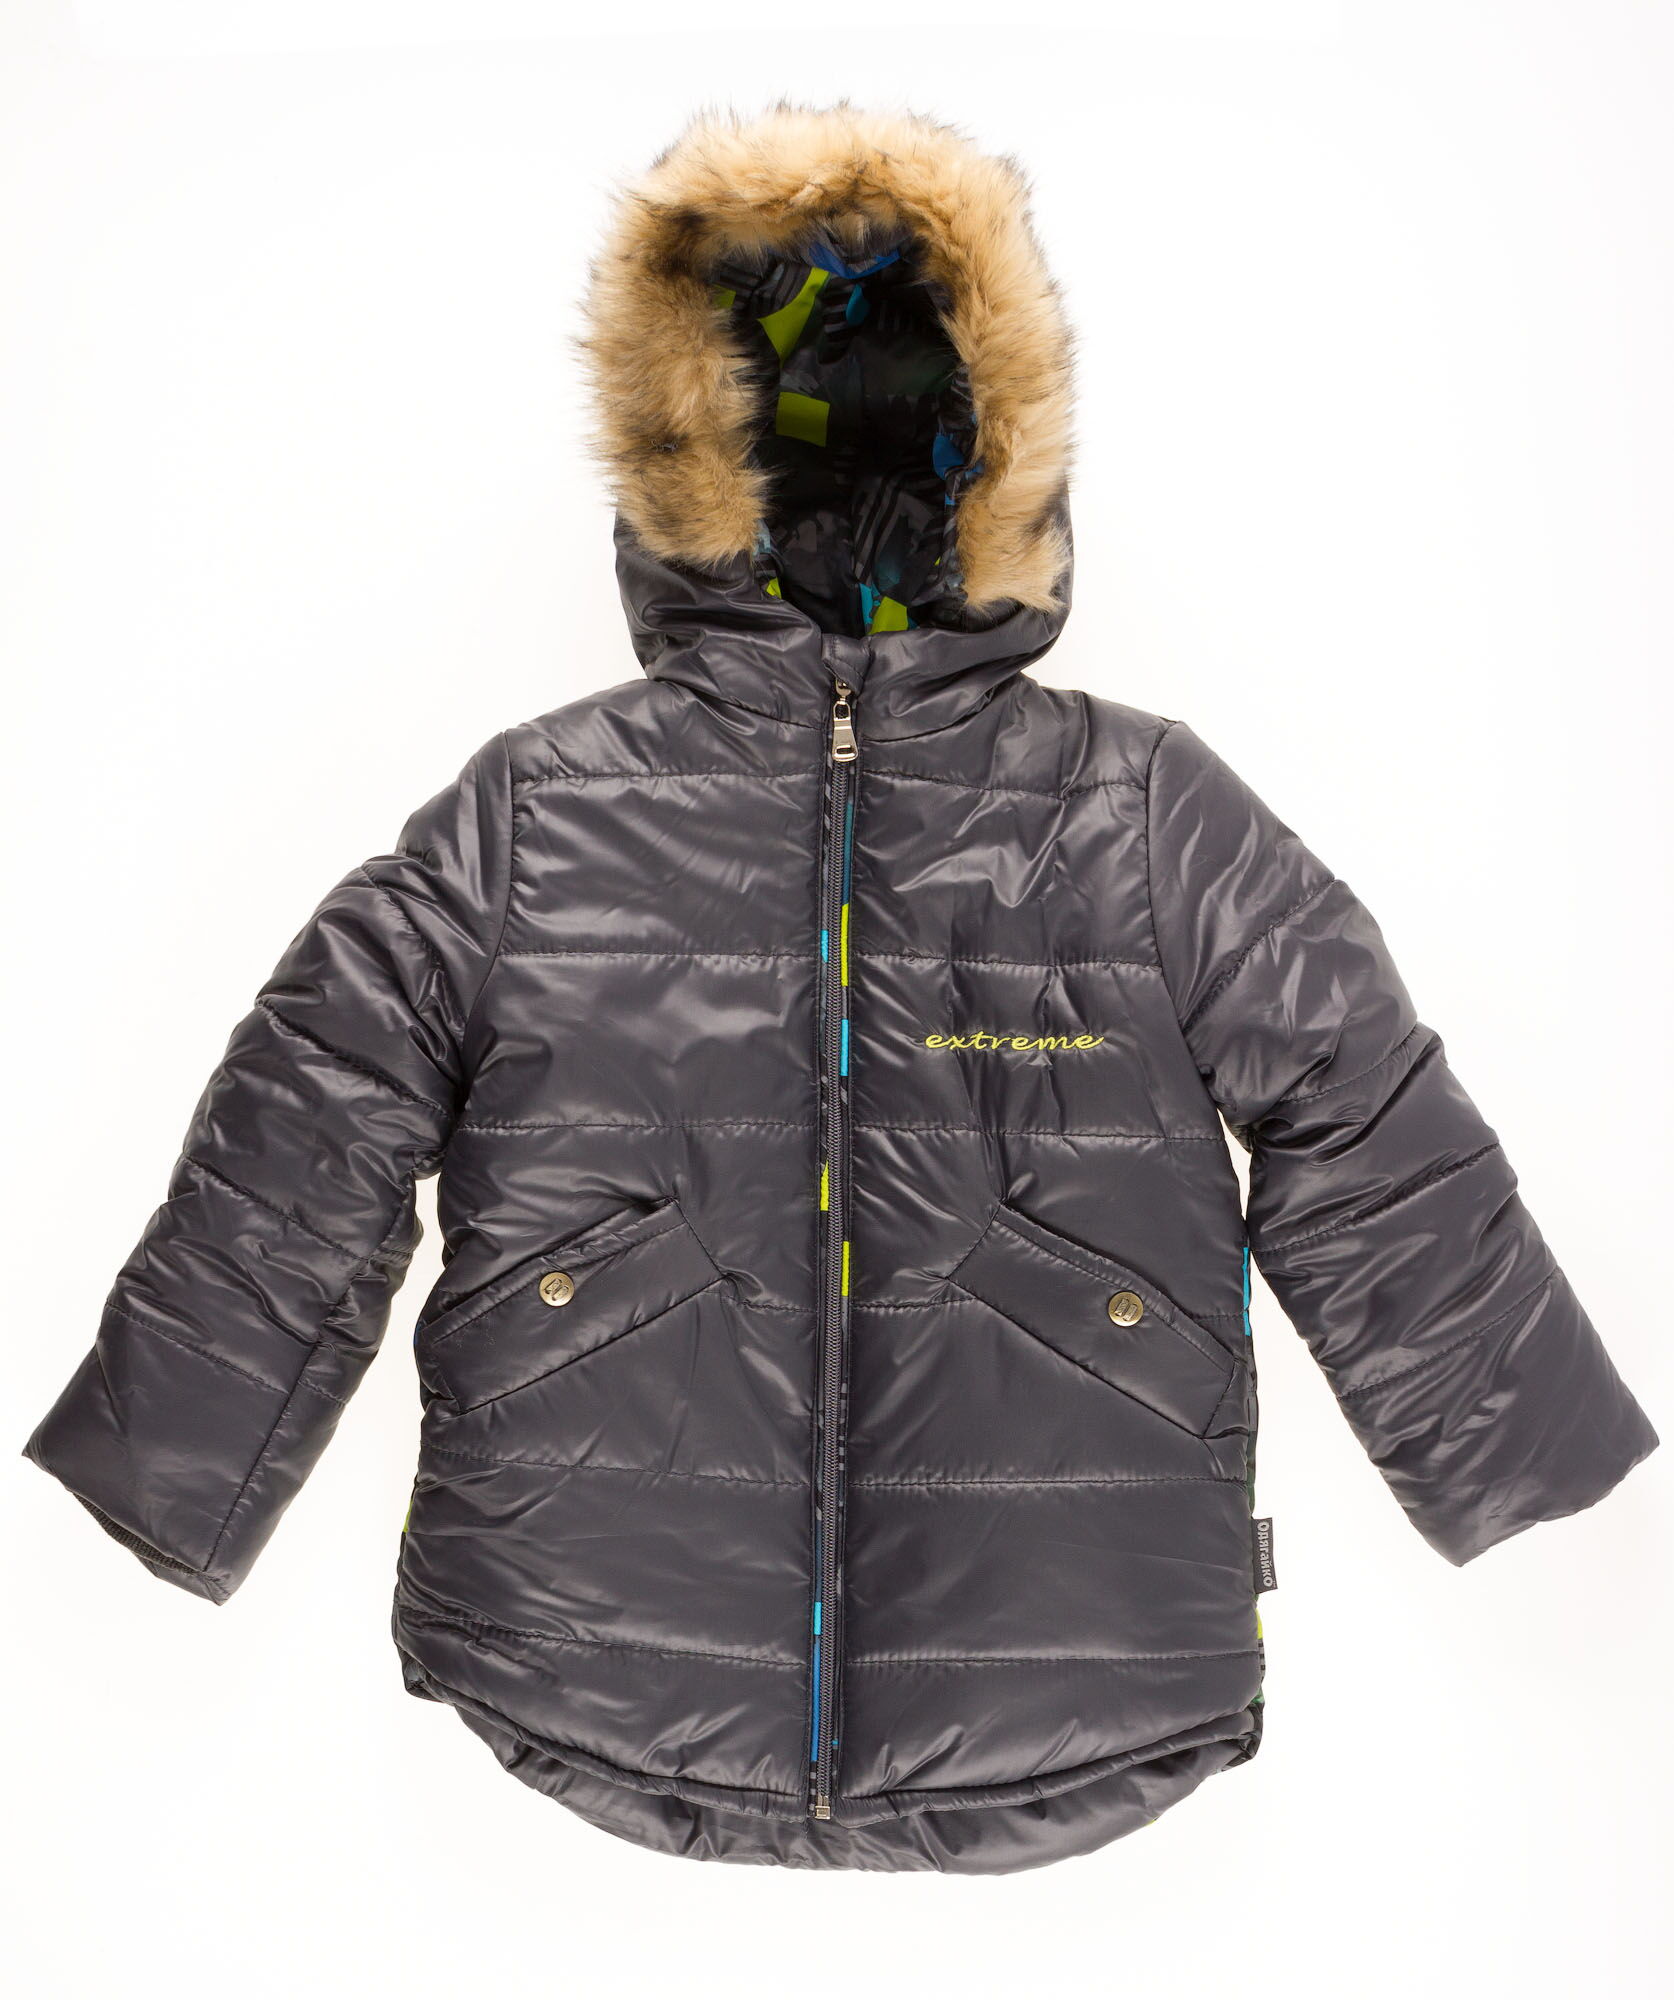 Куртка зимняя для мальчика Одягайко серая 20031О - цена